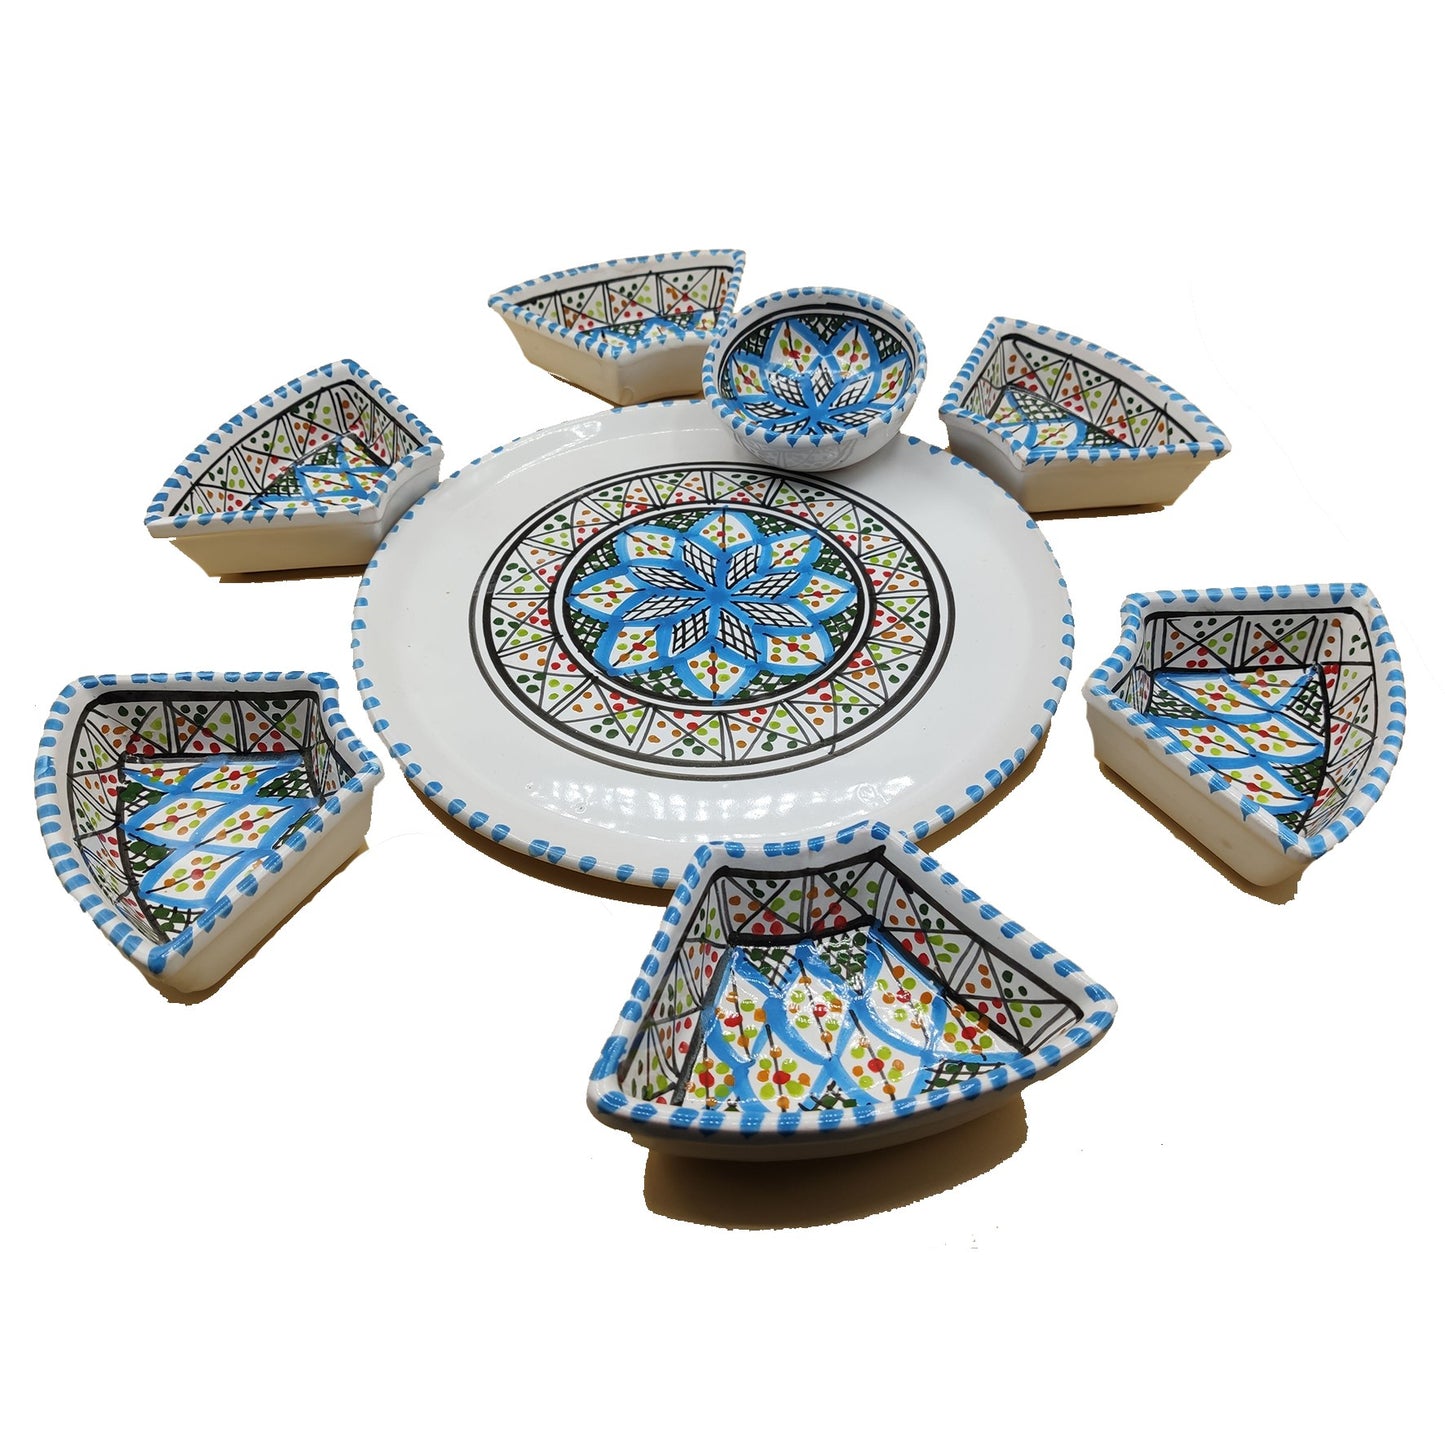 Antipastiera Piatto Etnico Ceramica Terracotta Tunisina Marocchina 2611201211